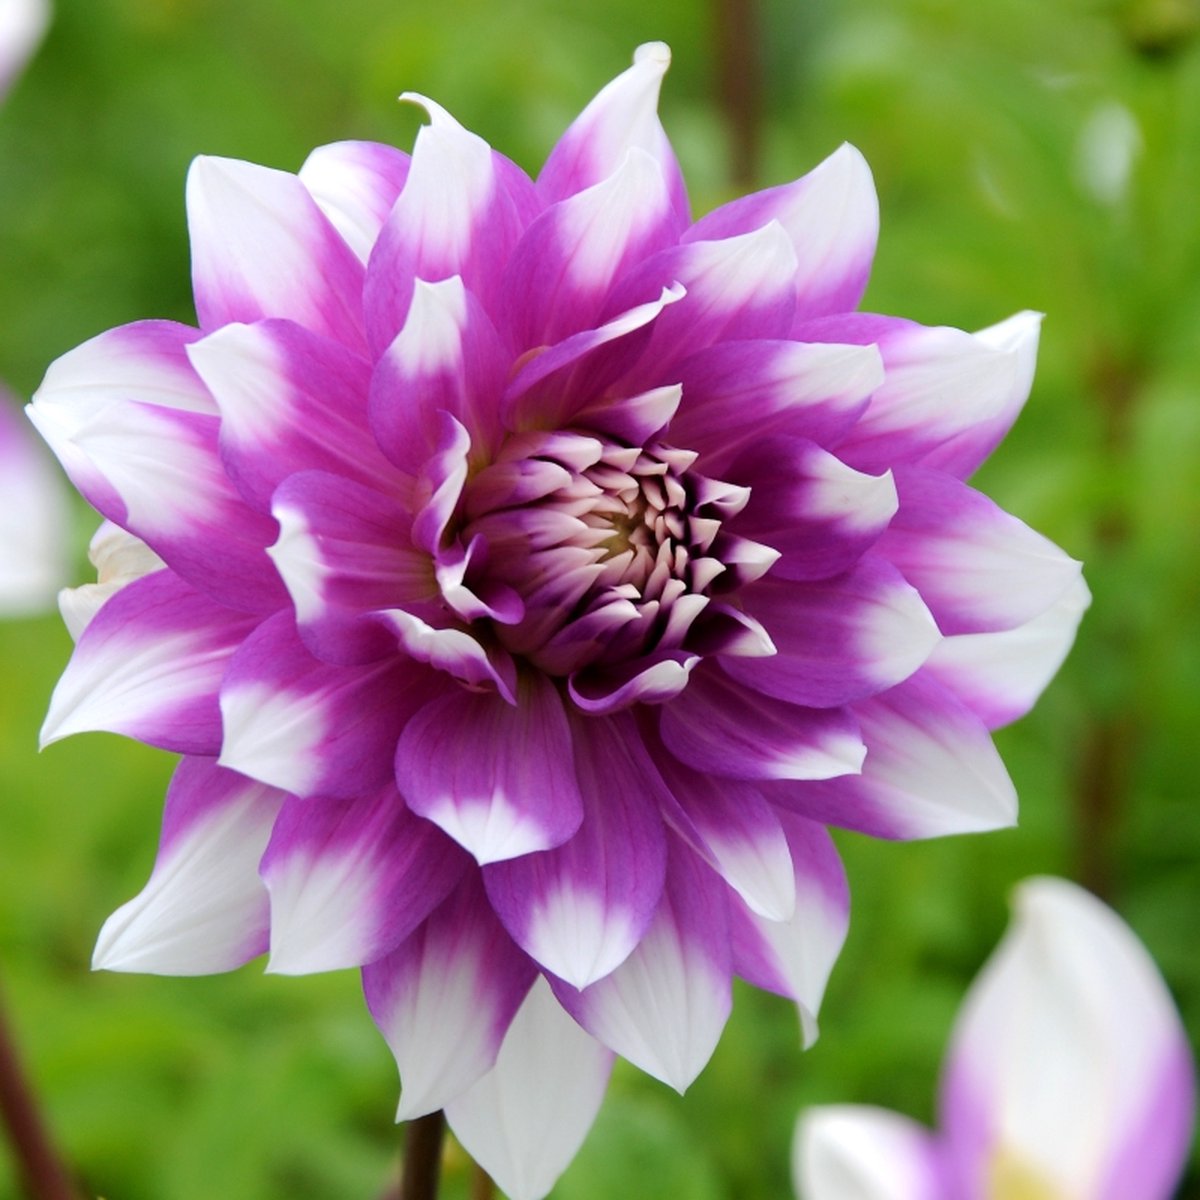 Dahlia Jean Marie | 3 stuks | Decoratieve Dahlia | Knol | Roze | Wit | Dahlia Knollen van Top Kwaliteit | 100% Bloeigarantie | QFB Gardening